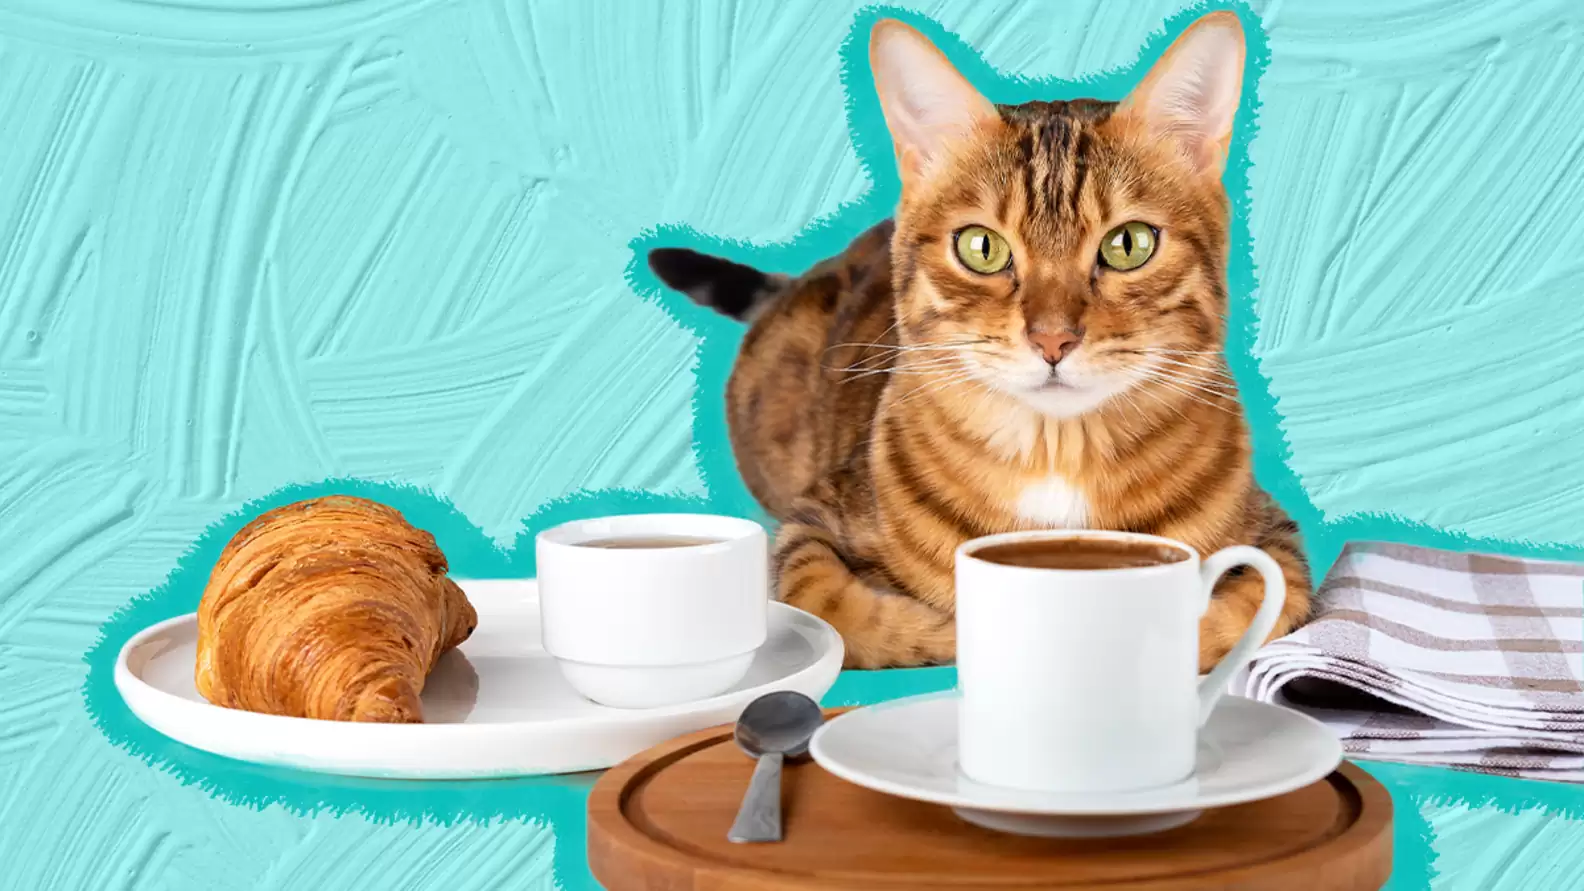 ماذا تحب القطط أن تأكل على الإفطار؟